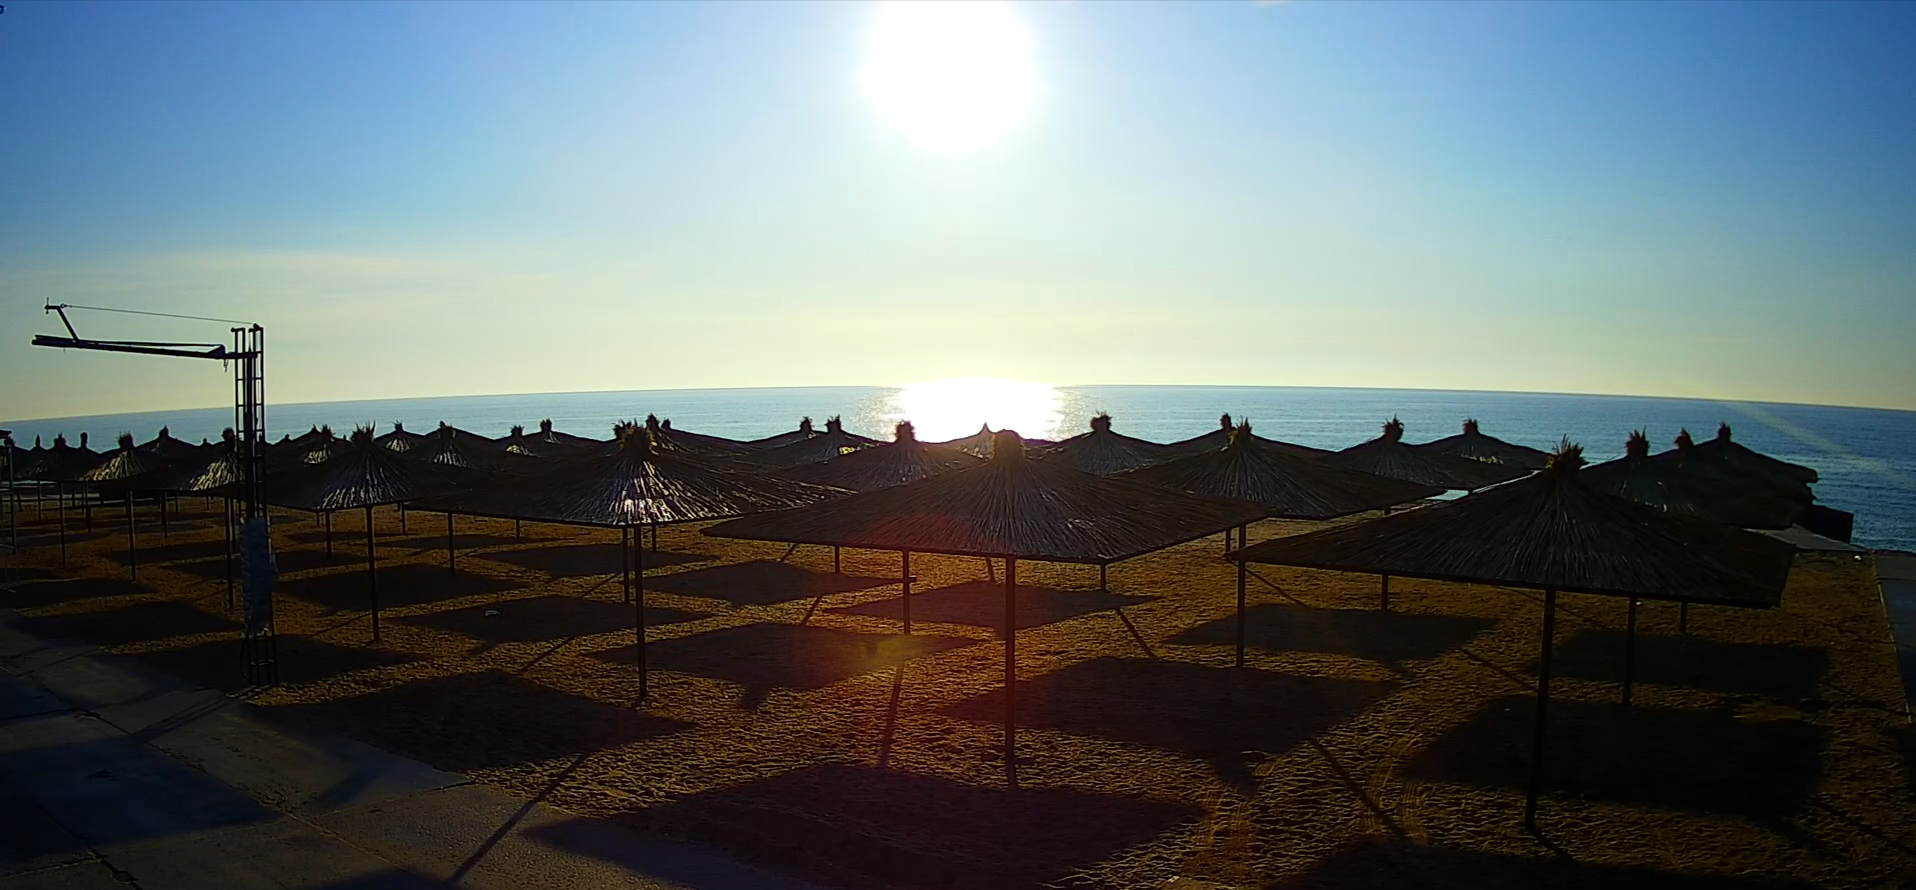 Огромное солнце и голубая лазурь: пустынные пляжи Кирилловки продолжают радовать глаз (ФОТО)